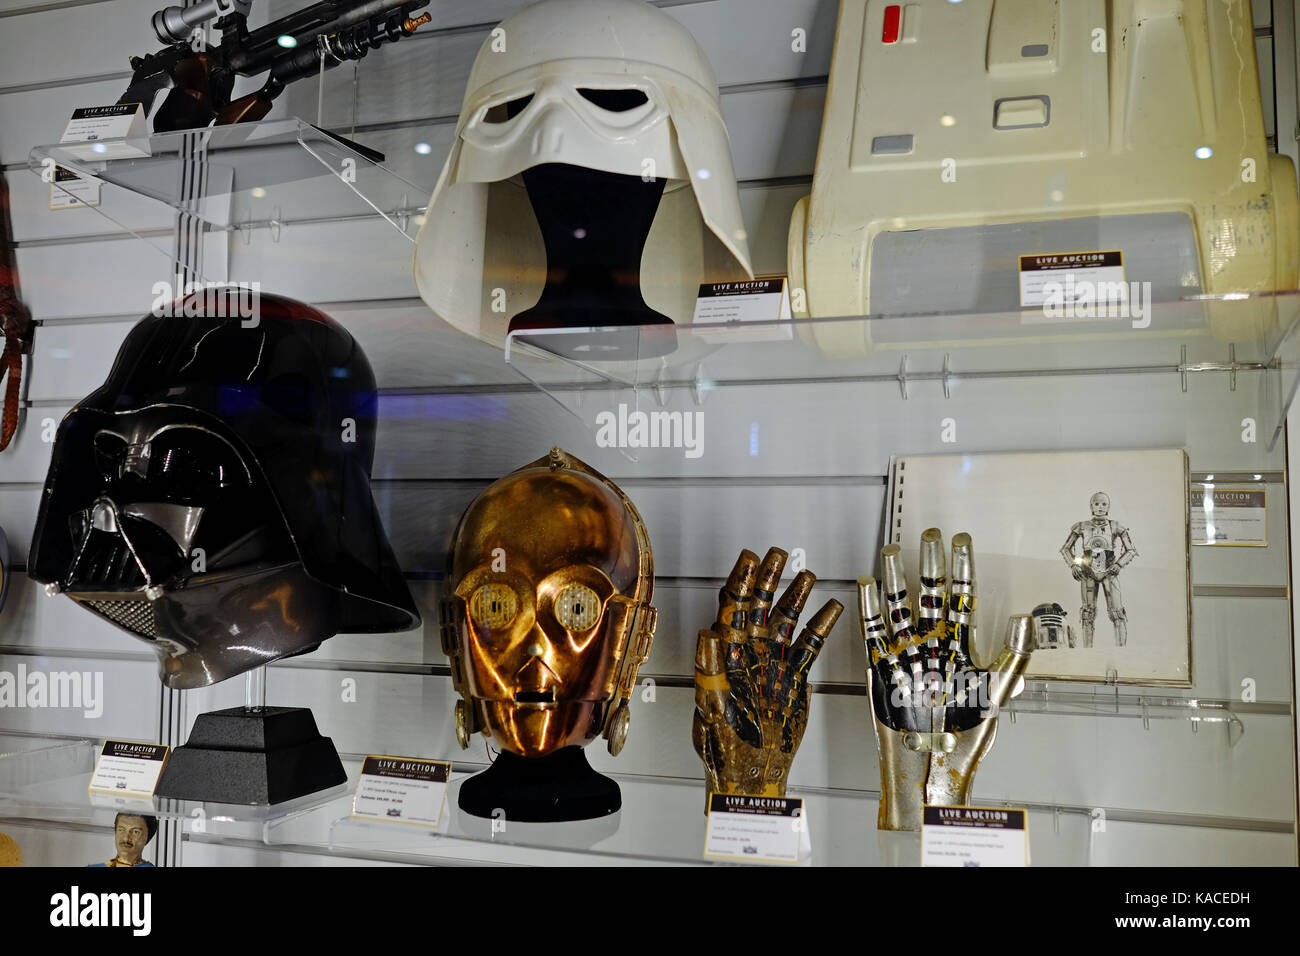 Exposition à l'avance de la vente aux enchères en direct lors de la BFI IMAX le 26 septembre 2017 des films et de la télévision, y compris des souvenirs du vrai Star Wars props Banque D'Images